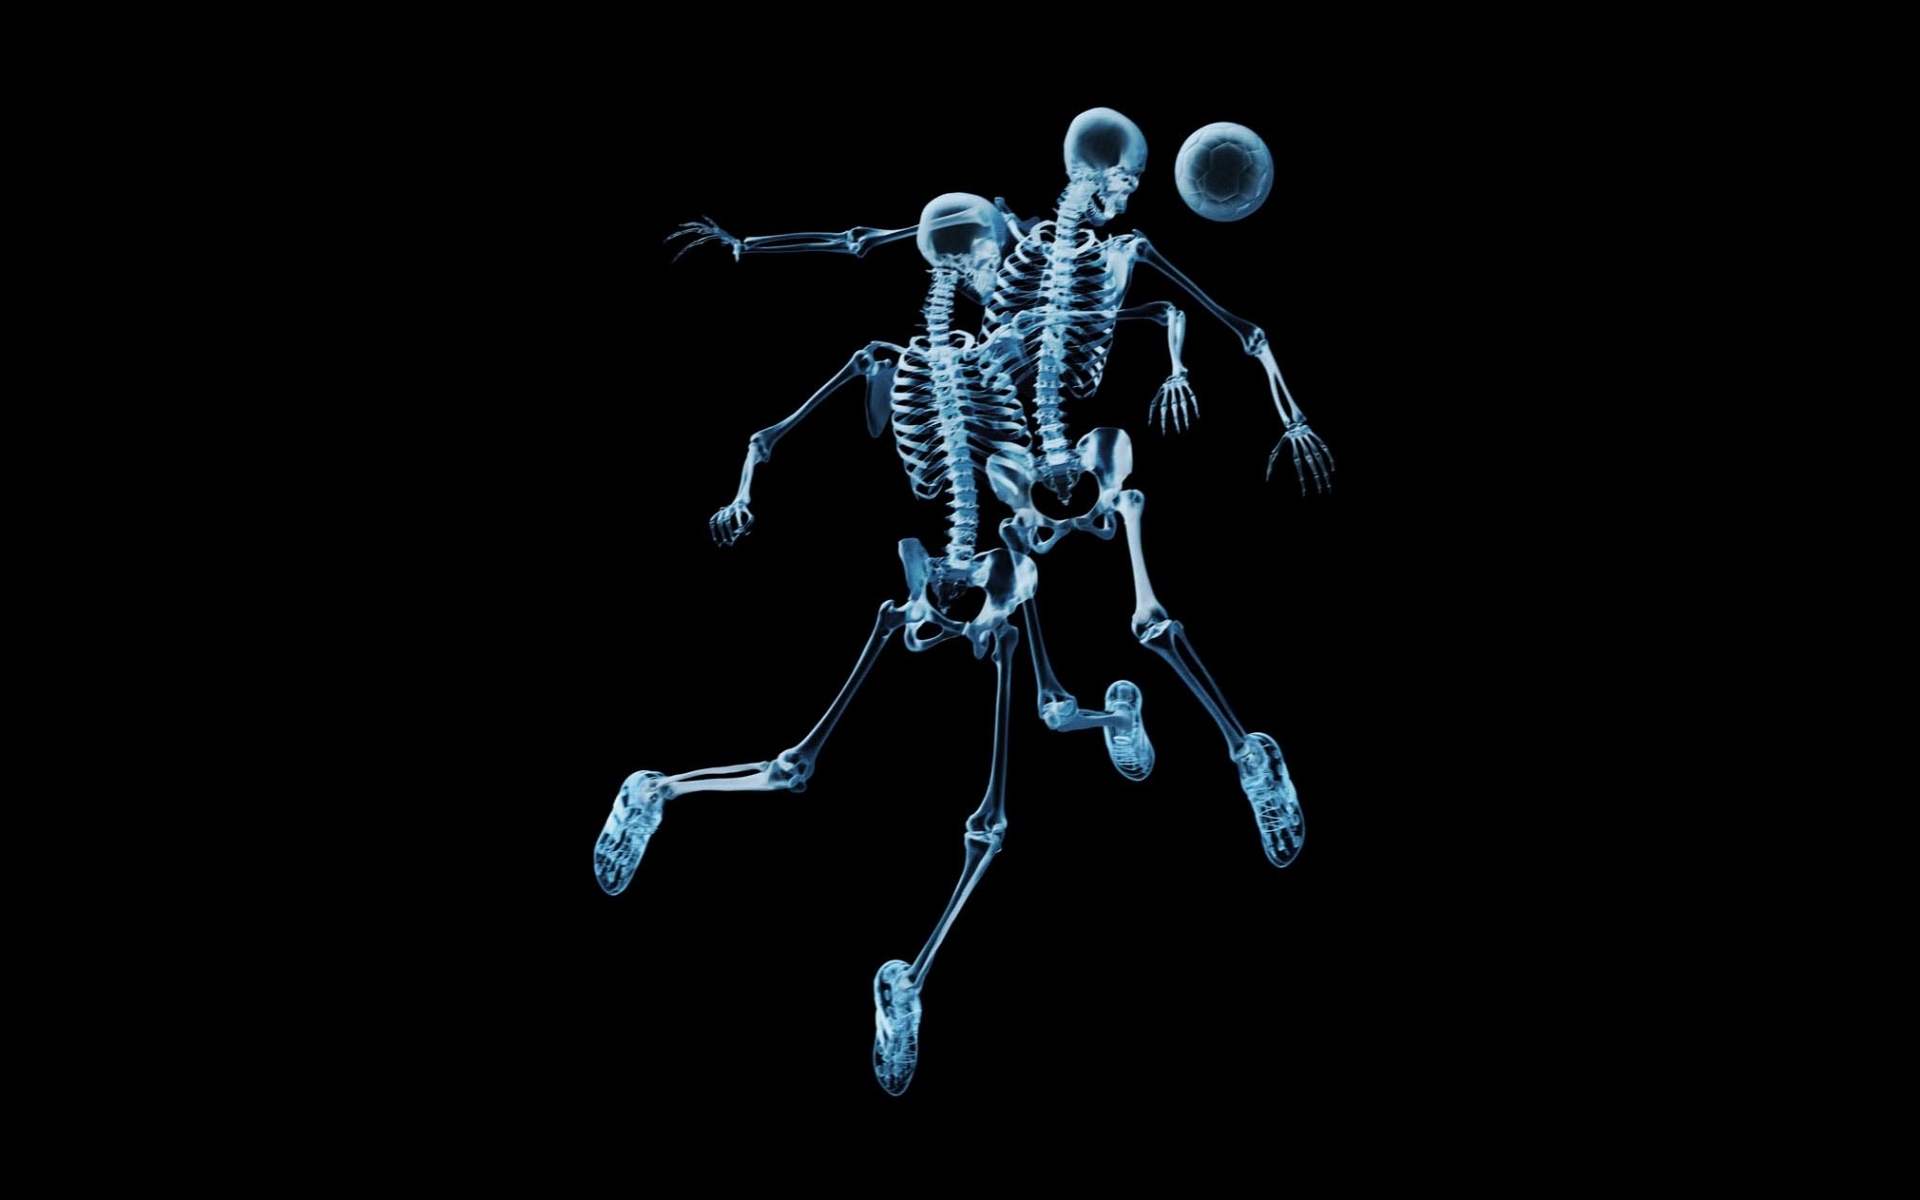 background, skeletons, black